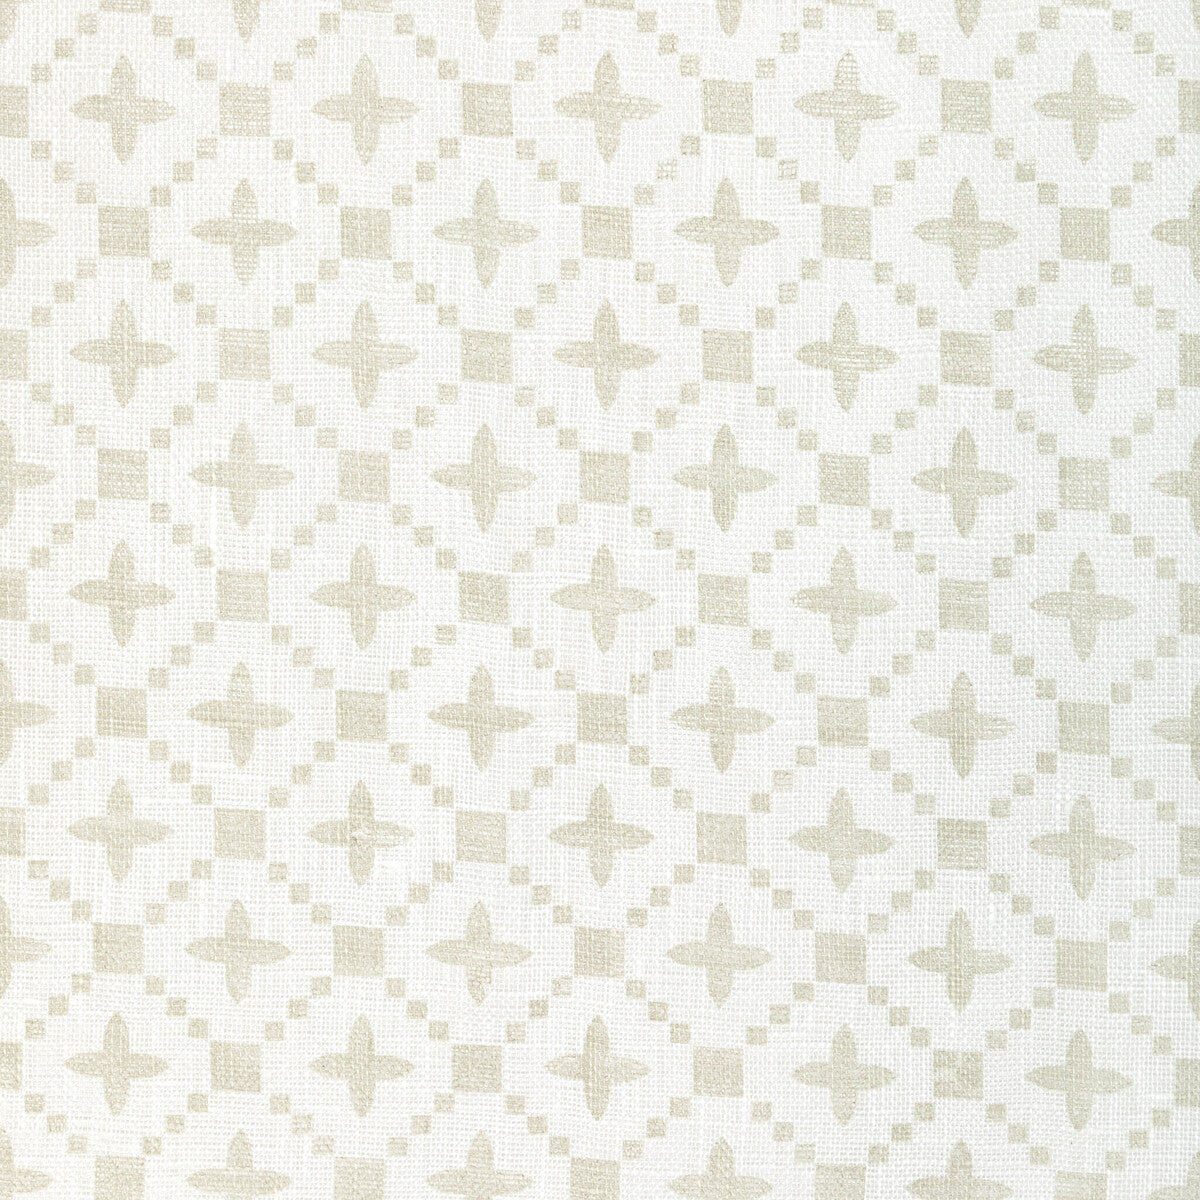 Kravet Basics fabric in 4945-16 color - pattern 4945.16.0 - by Kravet Basics